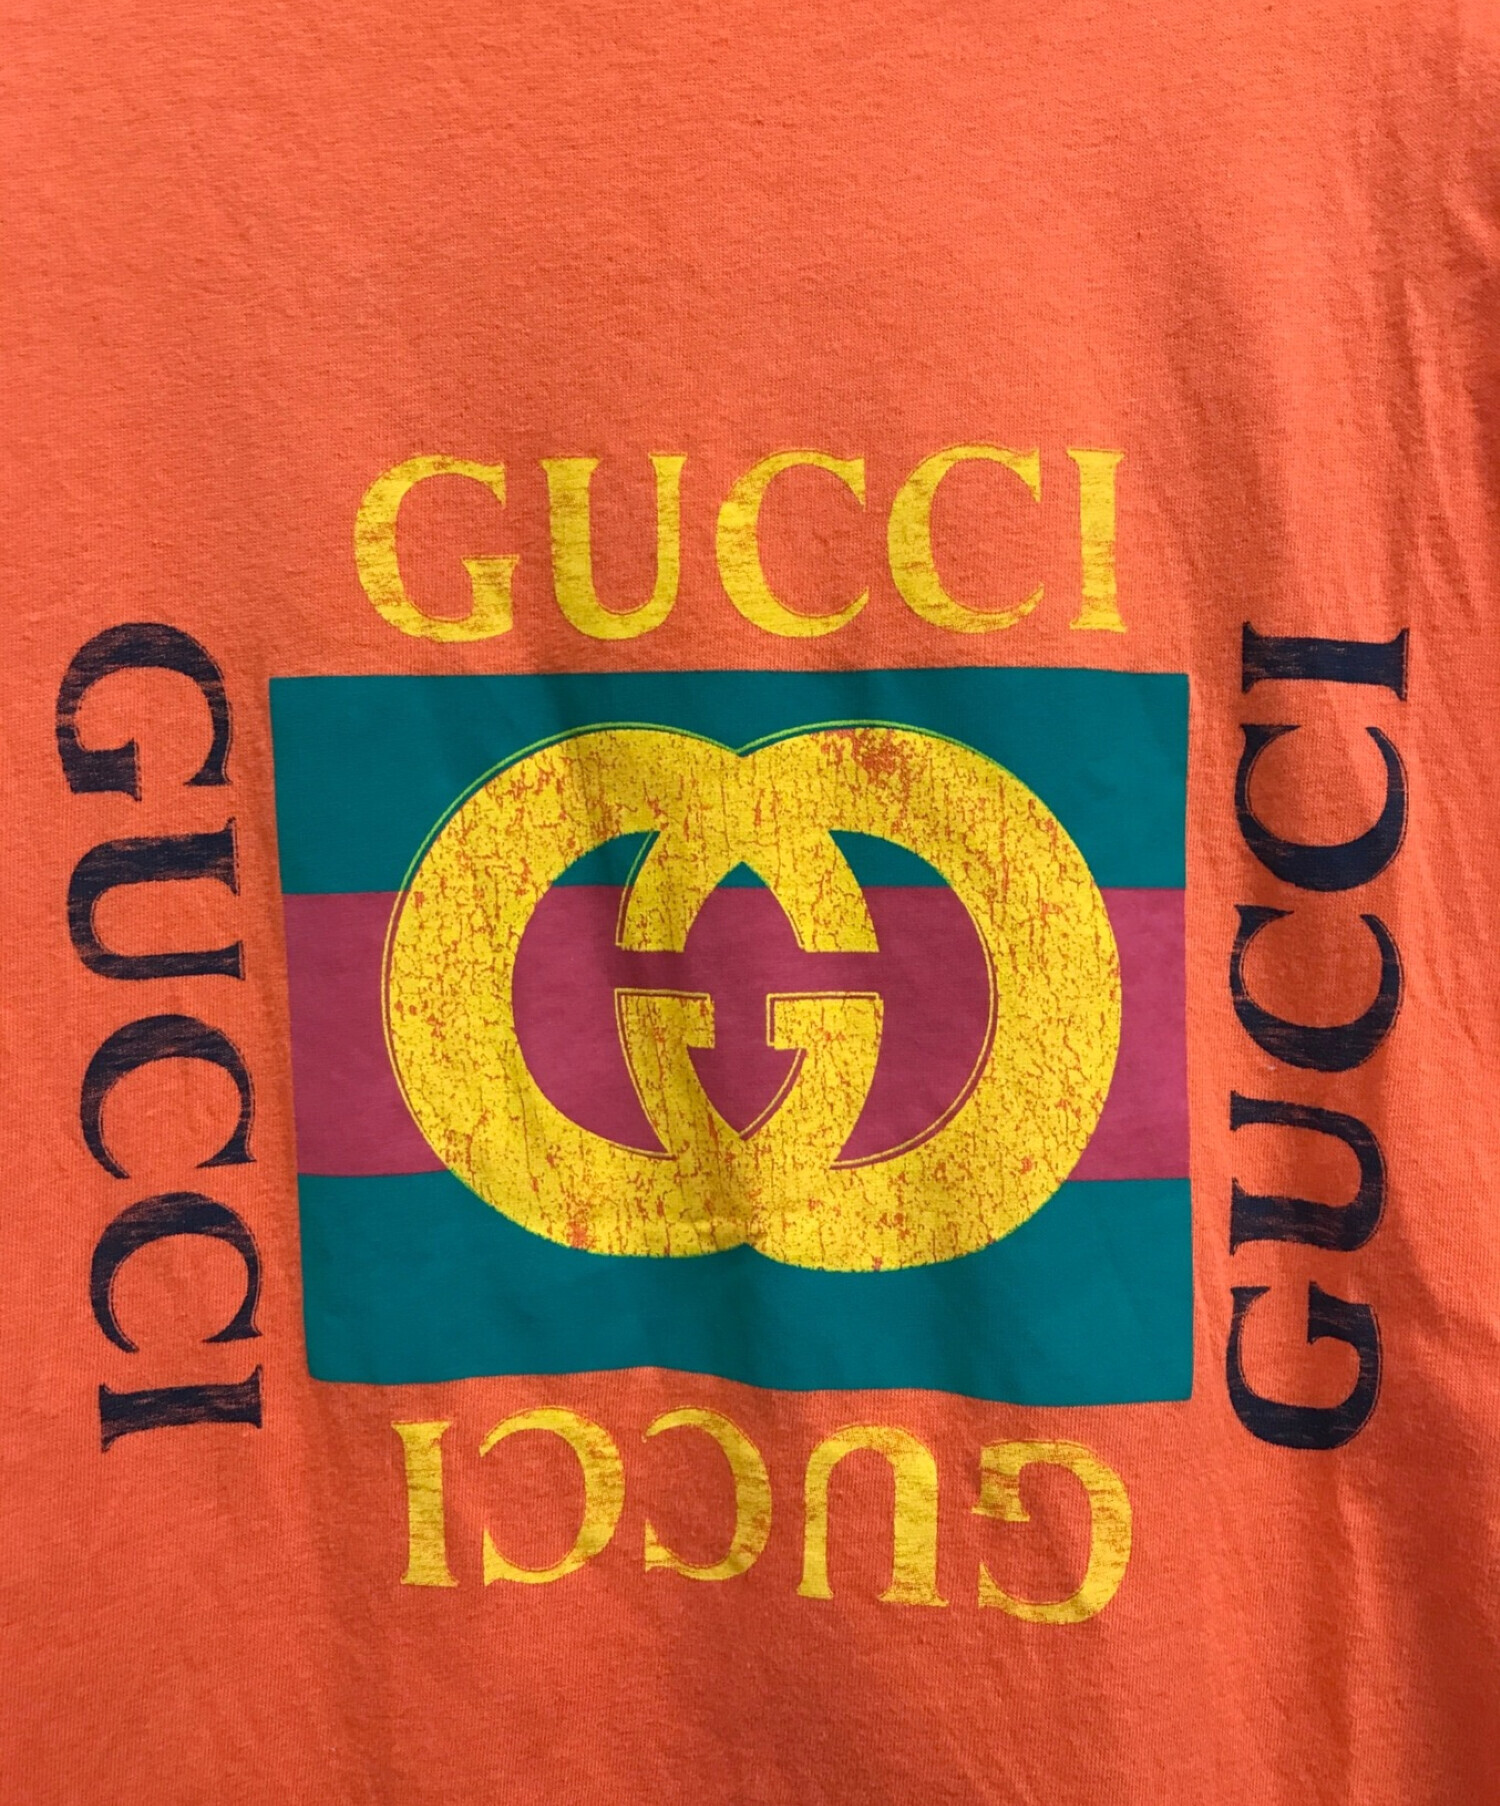 GUCCI (グッチ) ヴィンテージグリッターロゴプリントダメージTシャツ オレンジ サイズ:XS